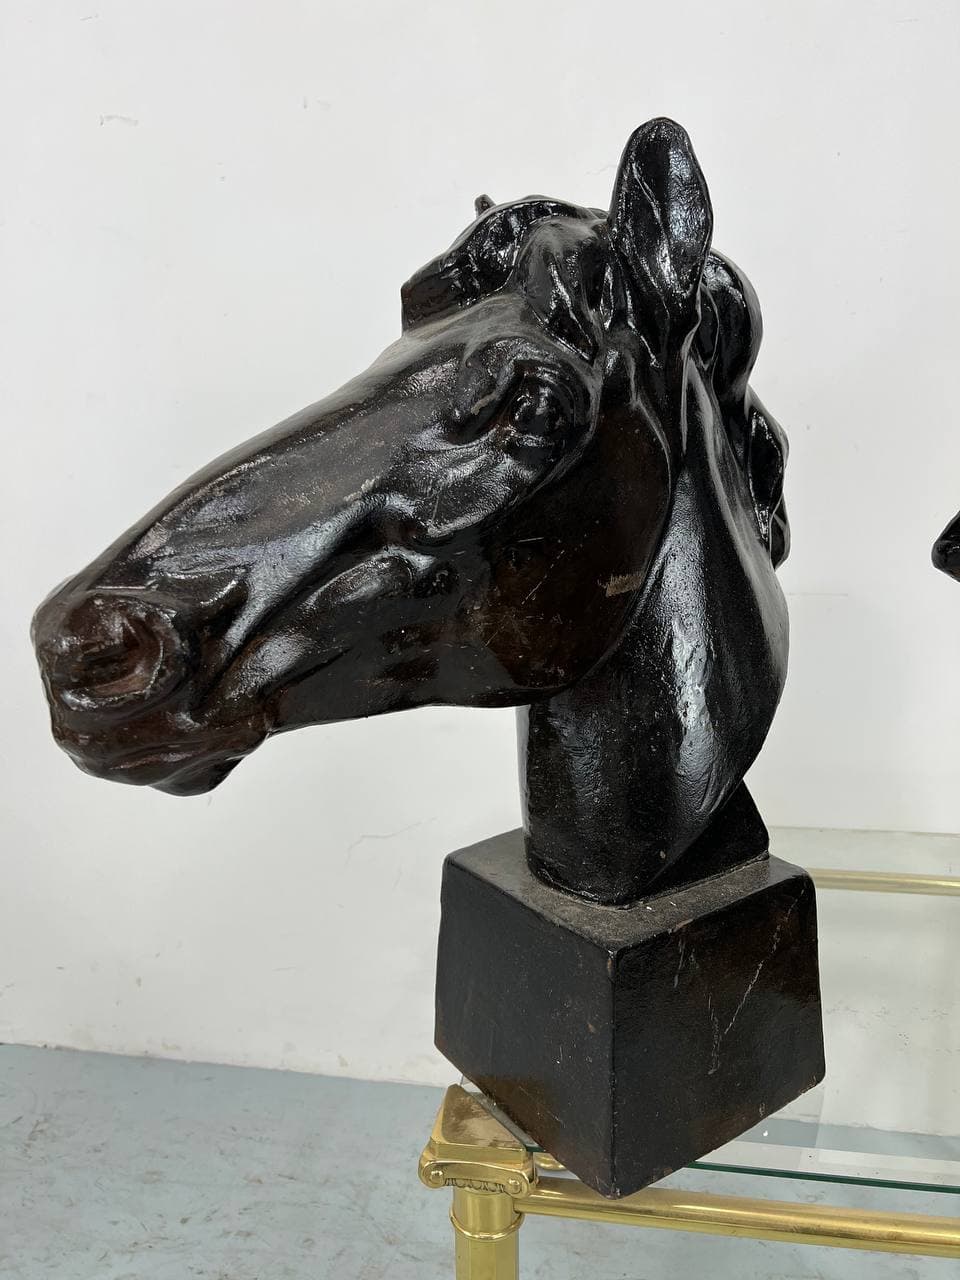 Винтажная пара скульптур «Голова лошади»